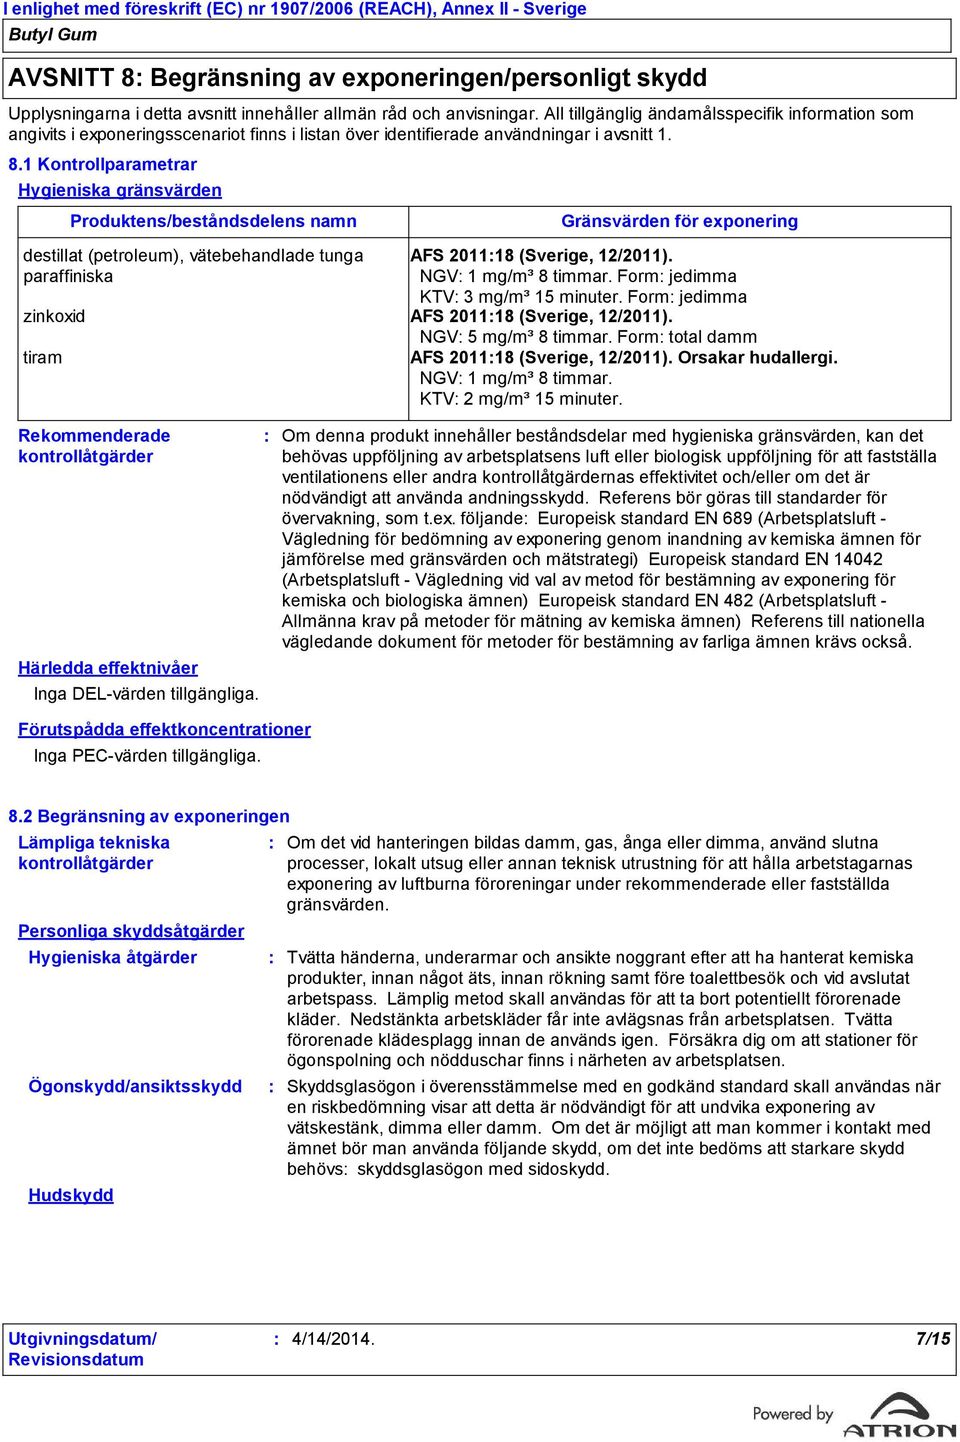 1 Kontrollparametrar Hygieniska gränsvärden Produktens/beståndsdelens namn destillat (petroleum), vätebehandlade tunga paraffiniska Gränsvärden för exponering AFS 201118 (Sverige, 12/2011).